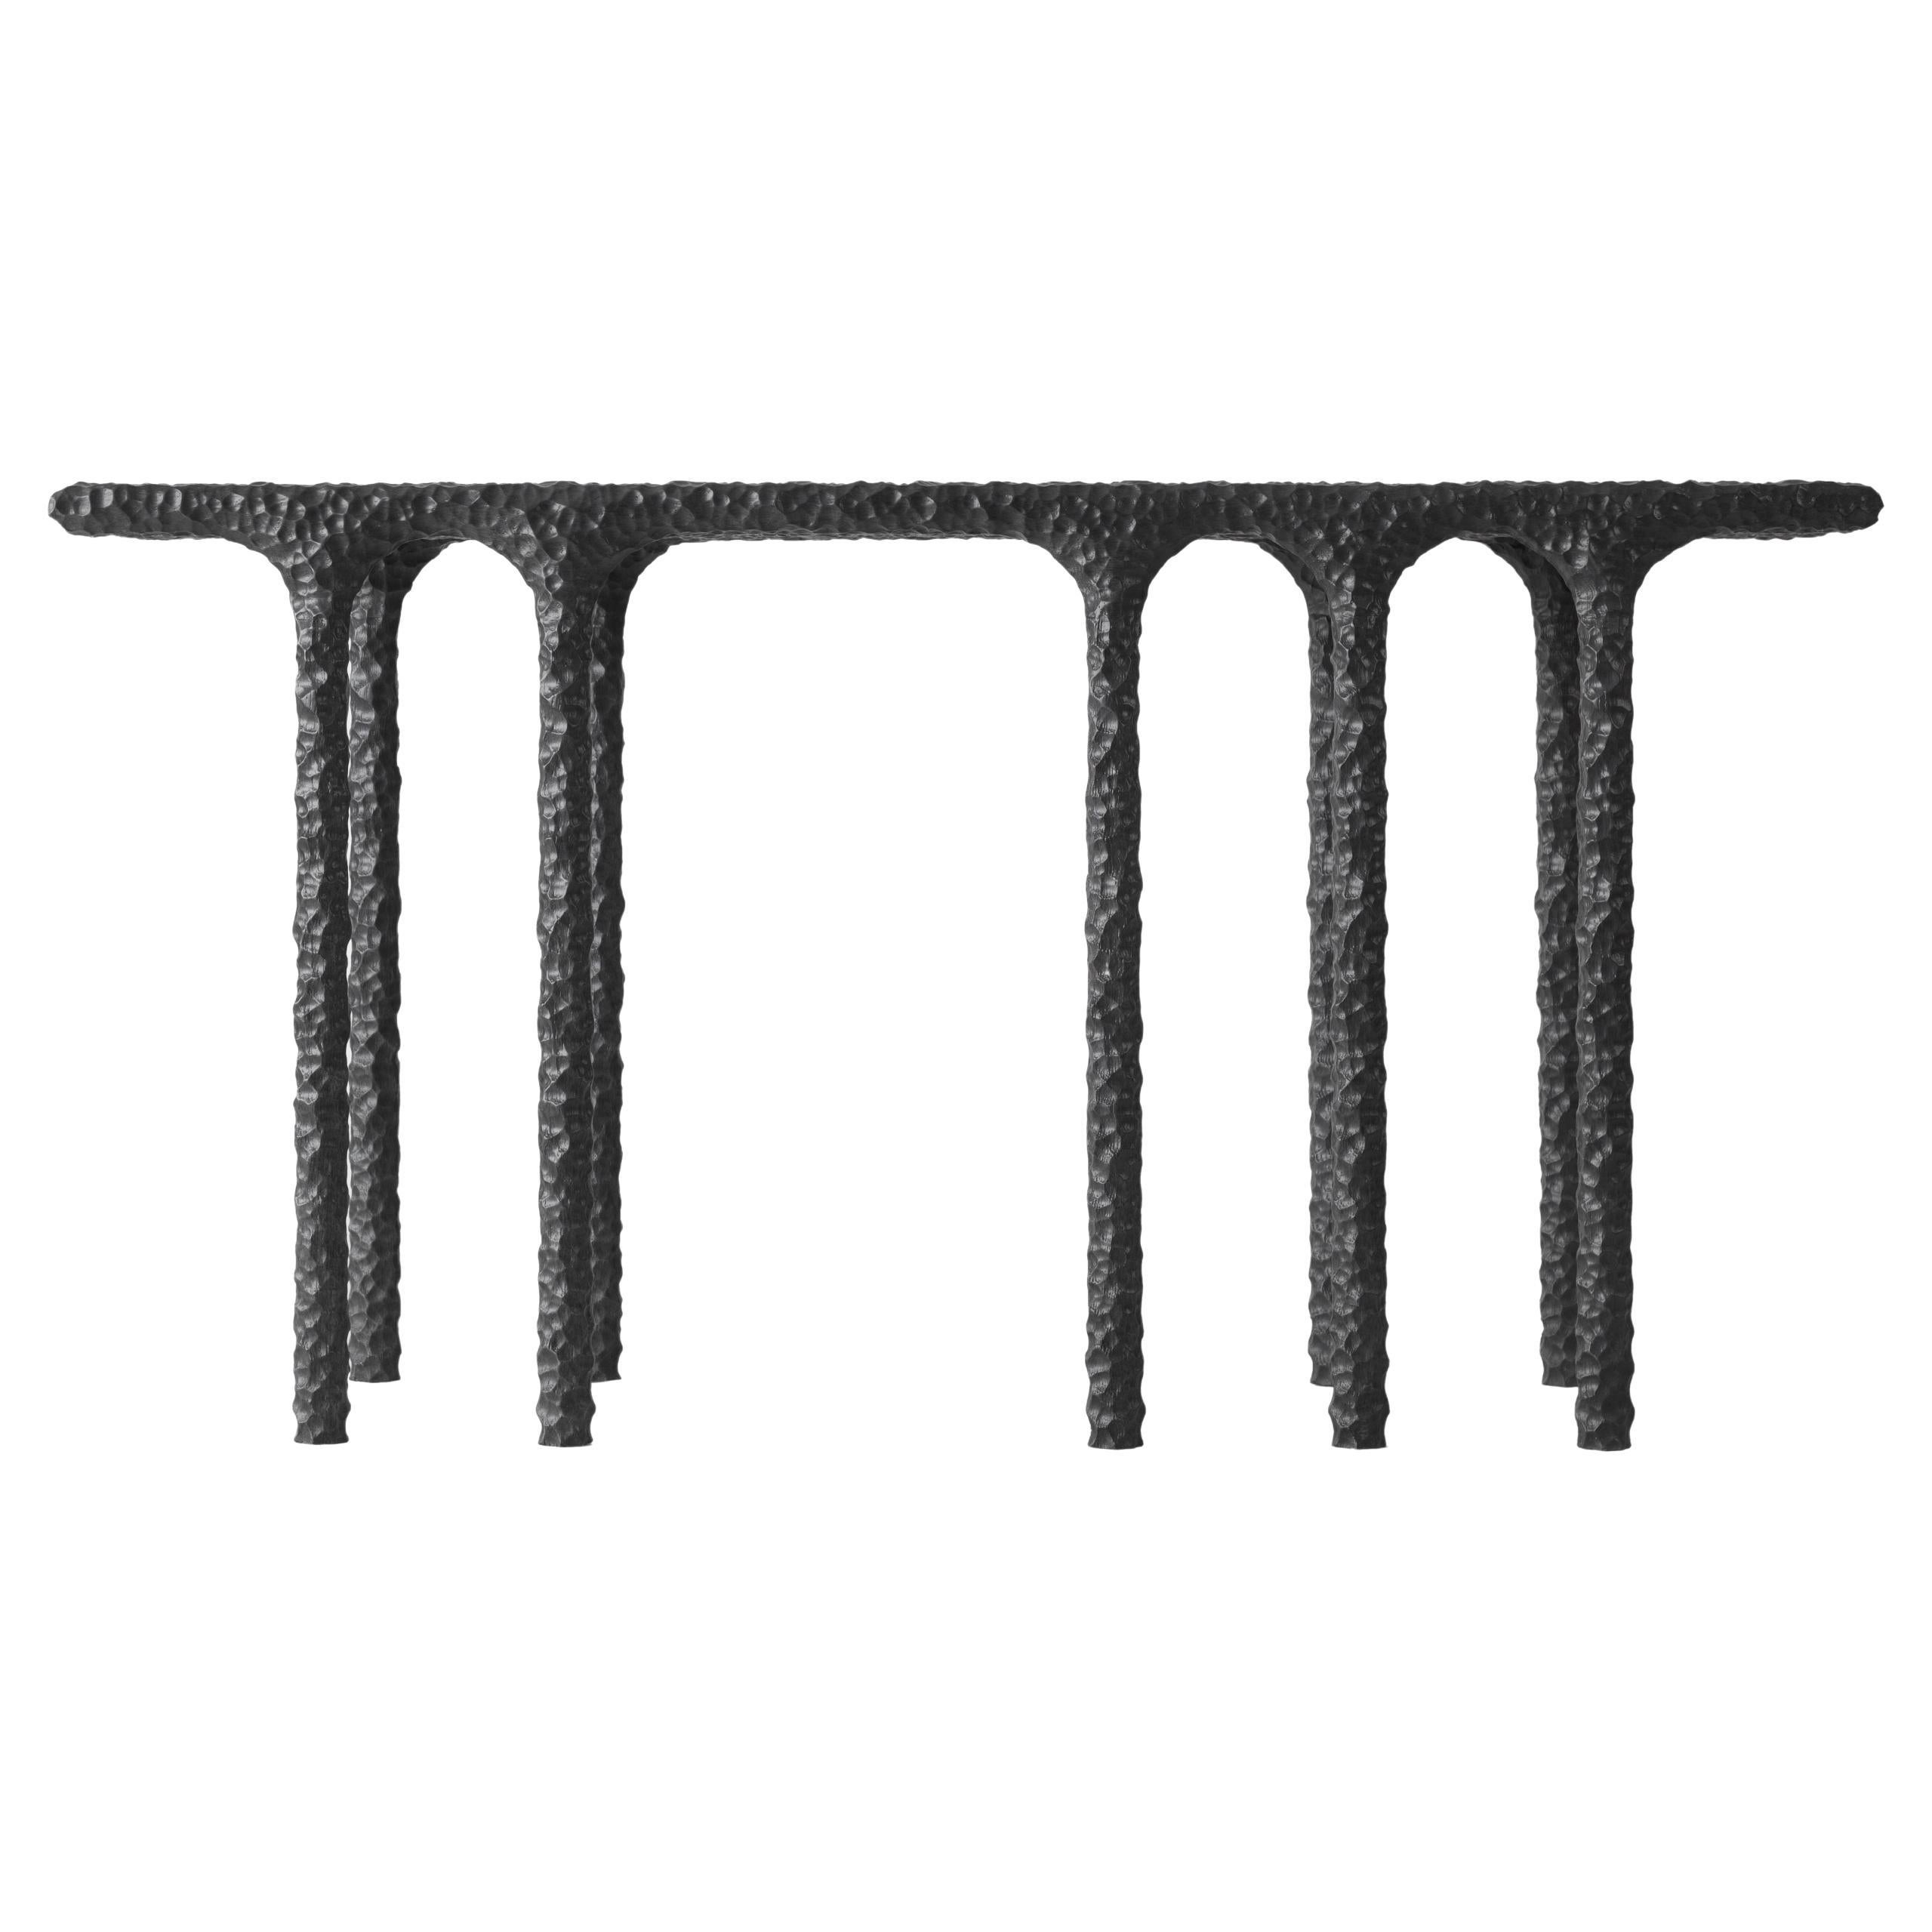 Console en chêne massif noir anthracite, sculptée à la main, avec plusieurs arches